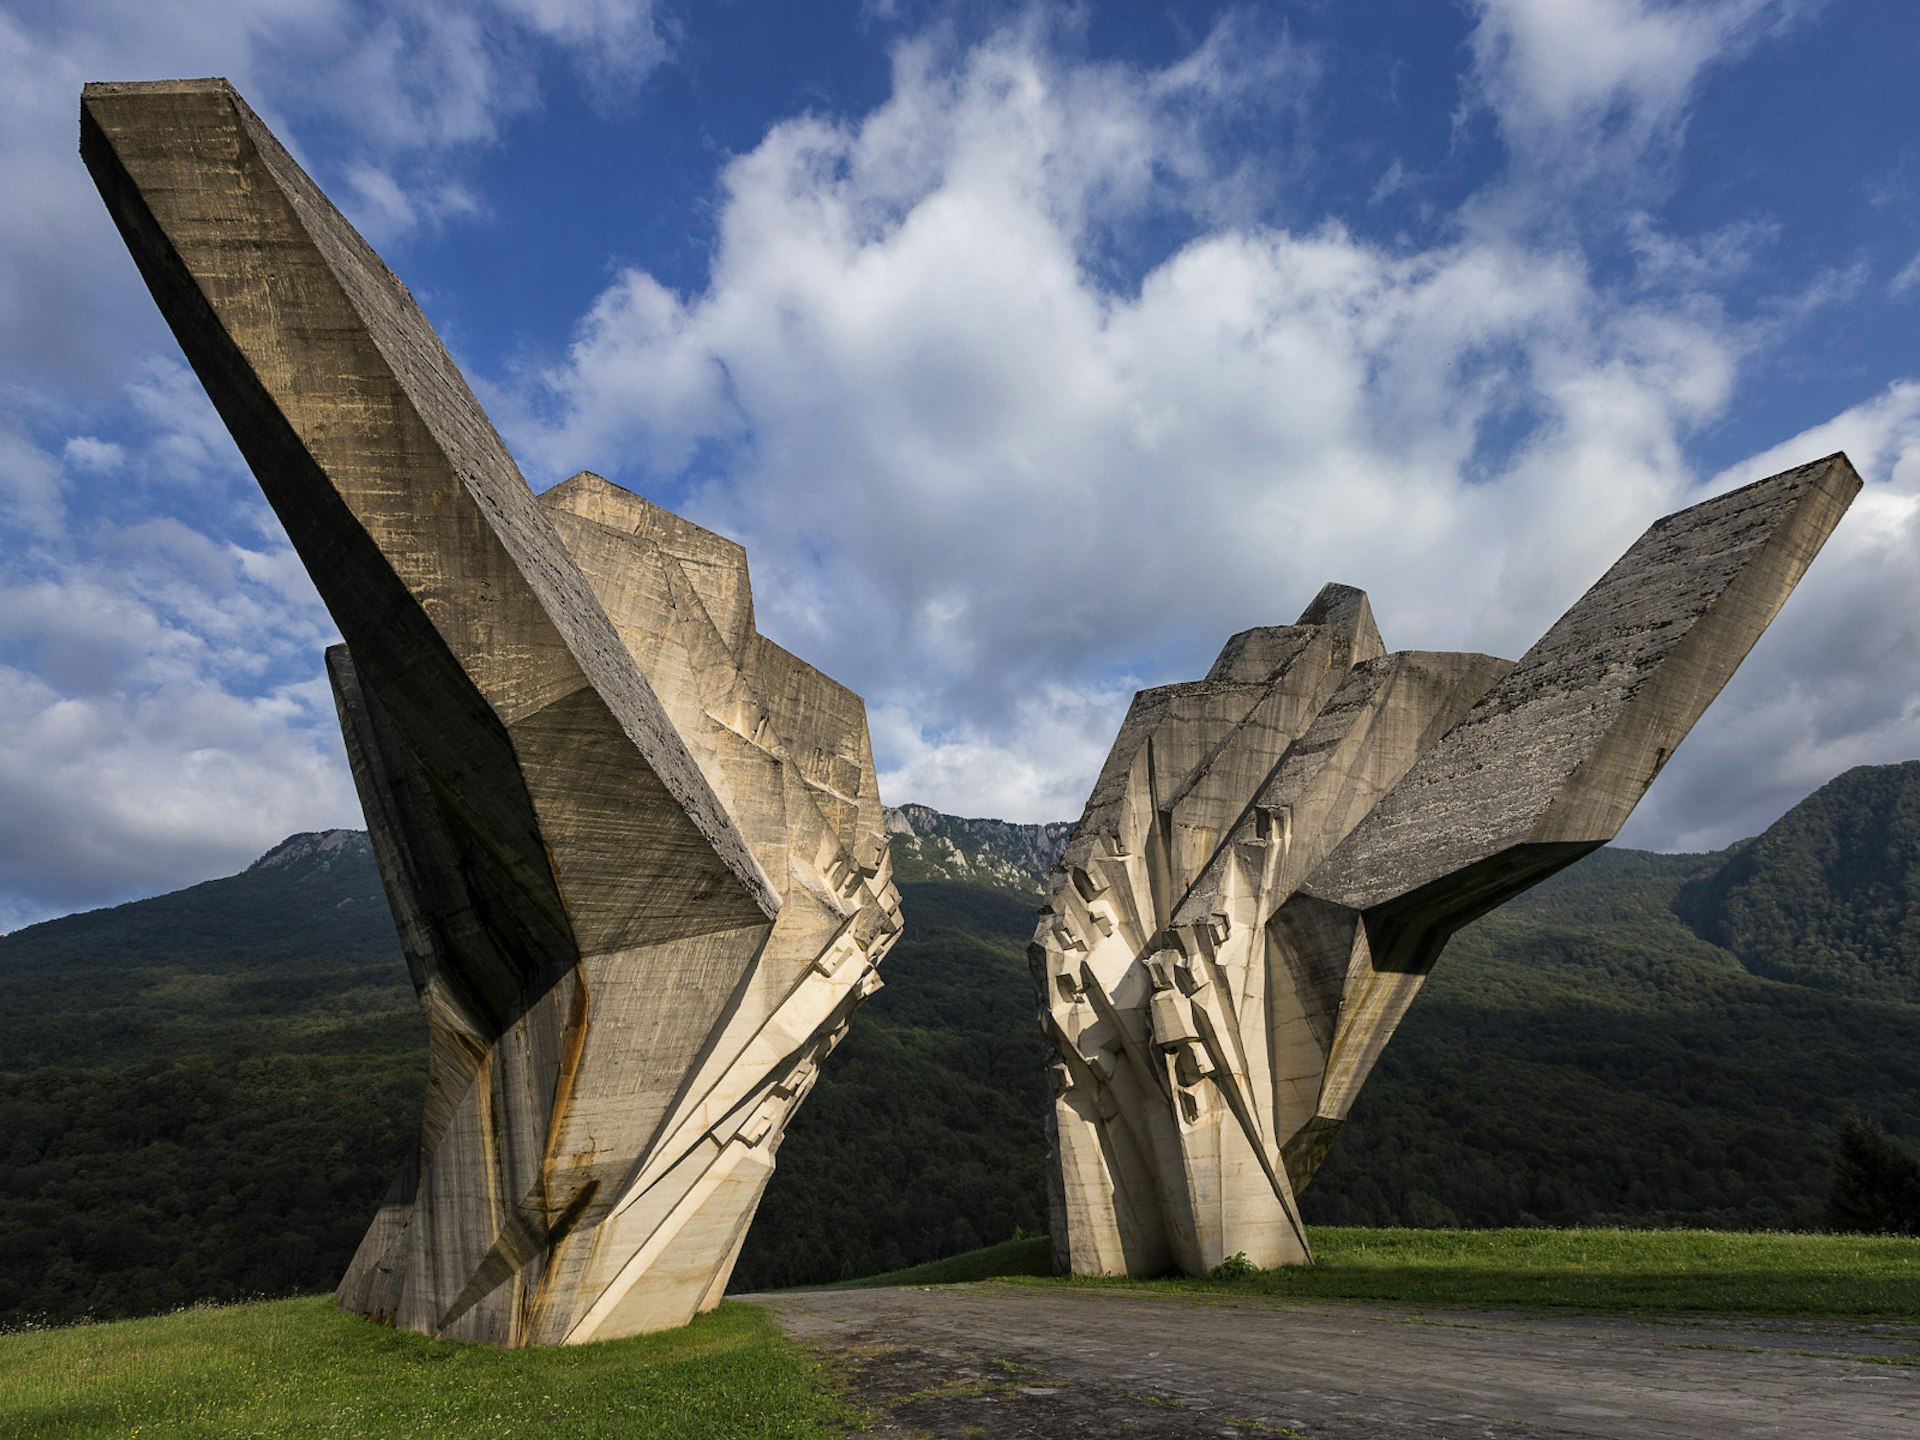 Tjentište memorial in Sutjeska National Park, Bosnia & Hercegovina, by Miodrag Živković and Ranko Radović © novak.elcic / Shutterstock